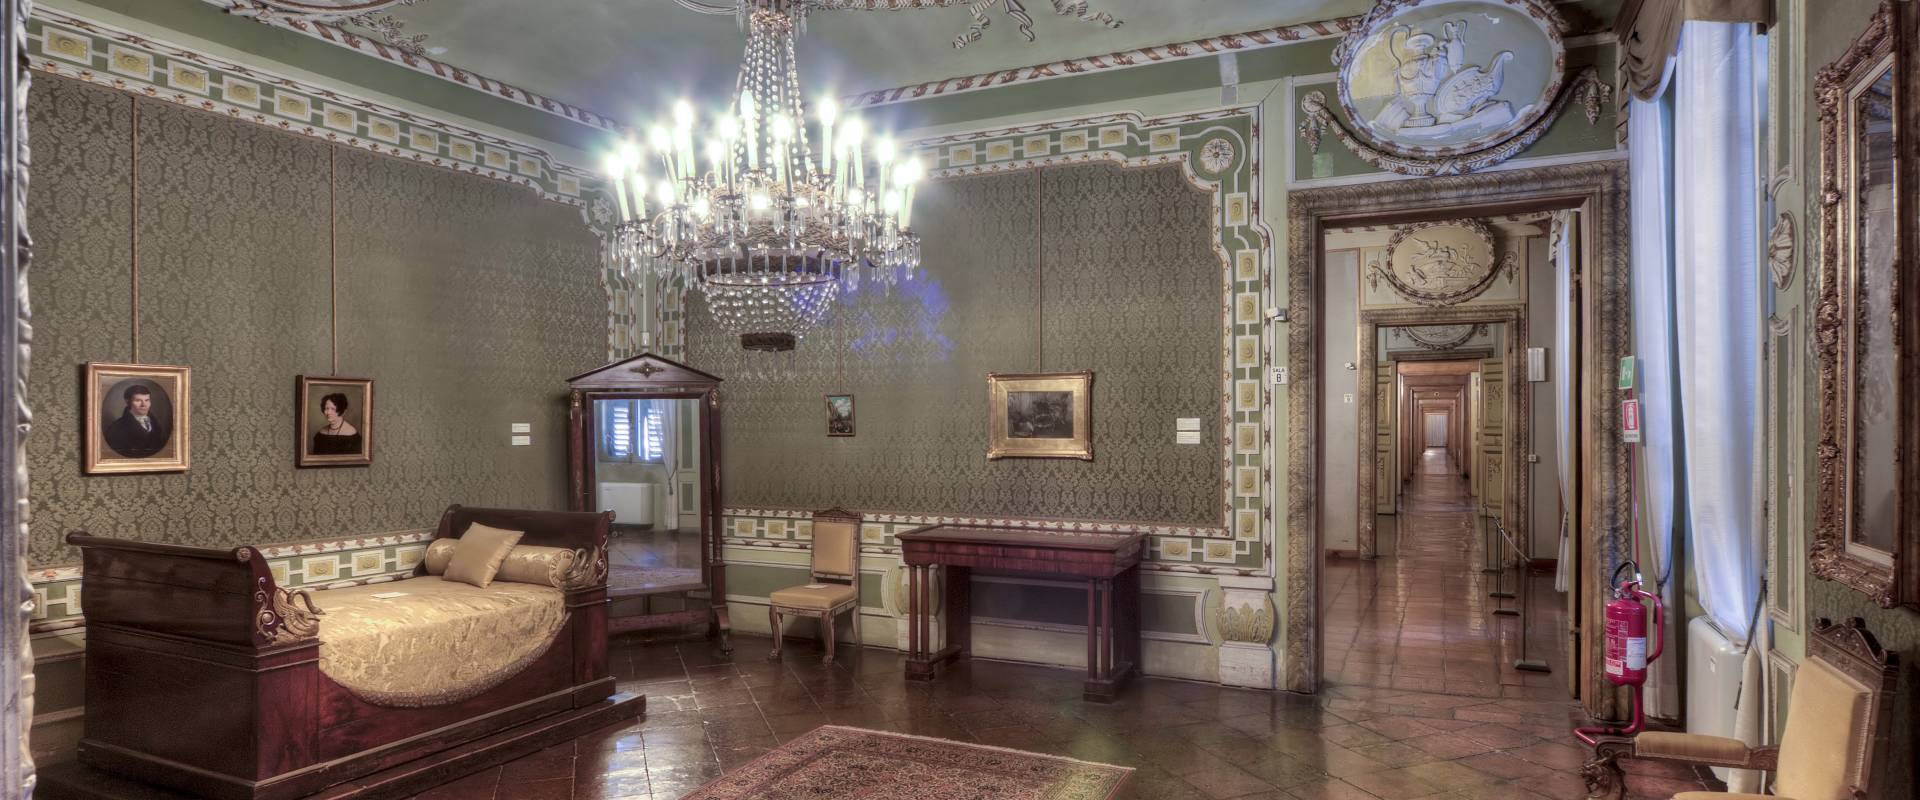 Palazzo Massari photo by Massimo Baraldi